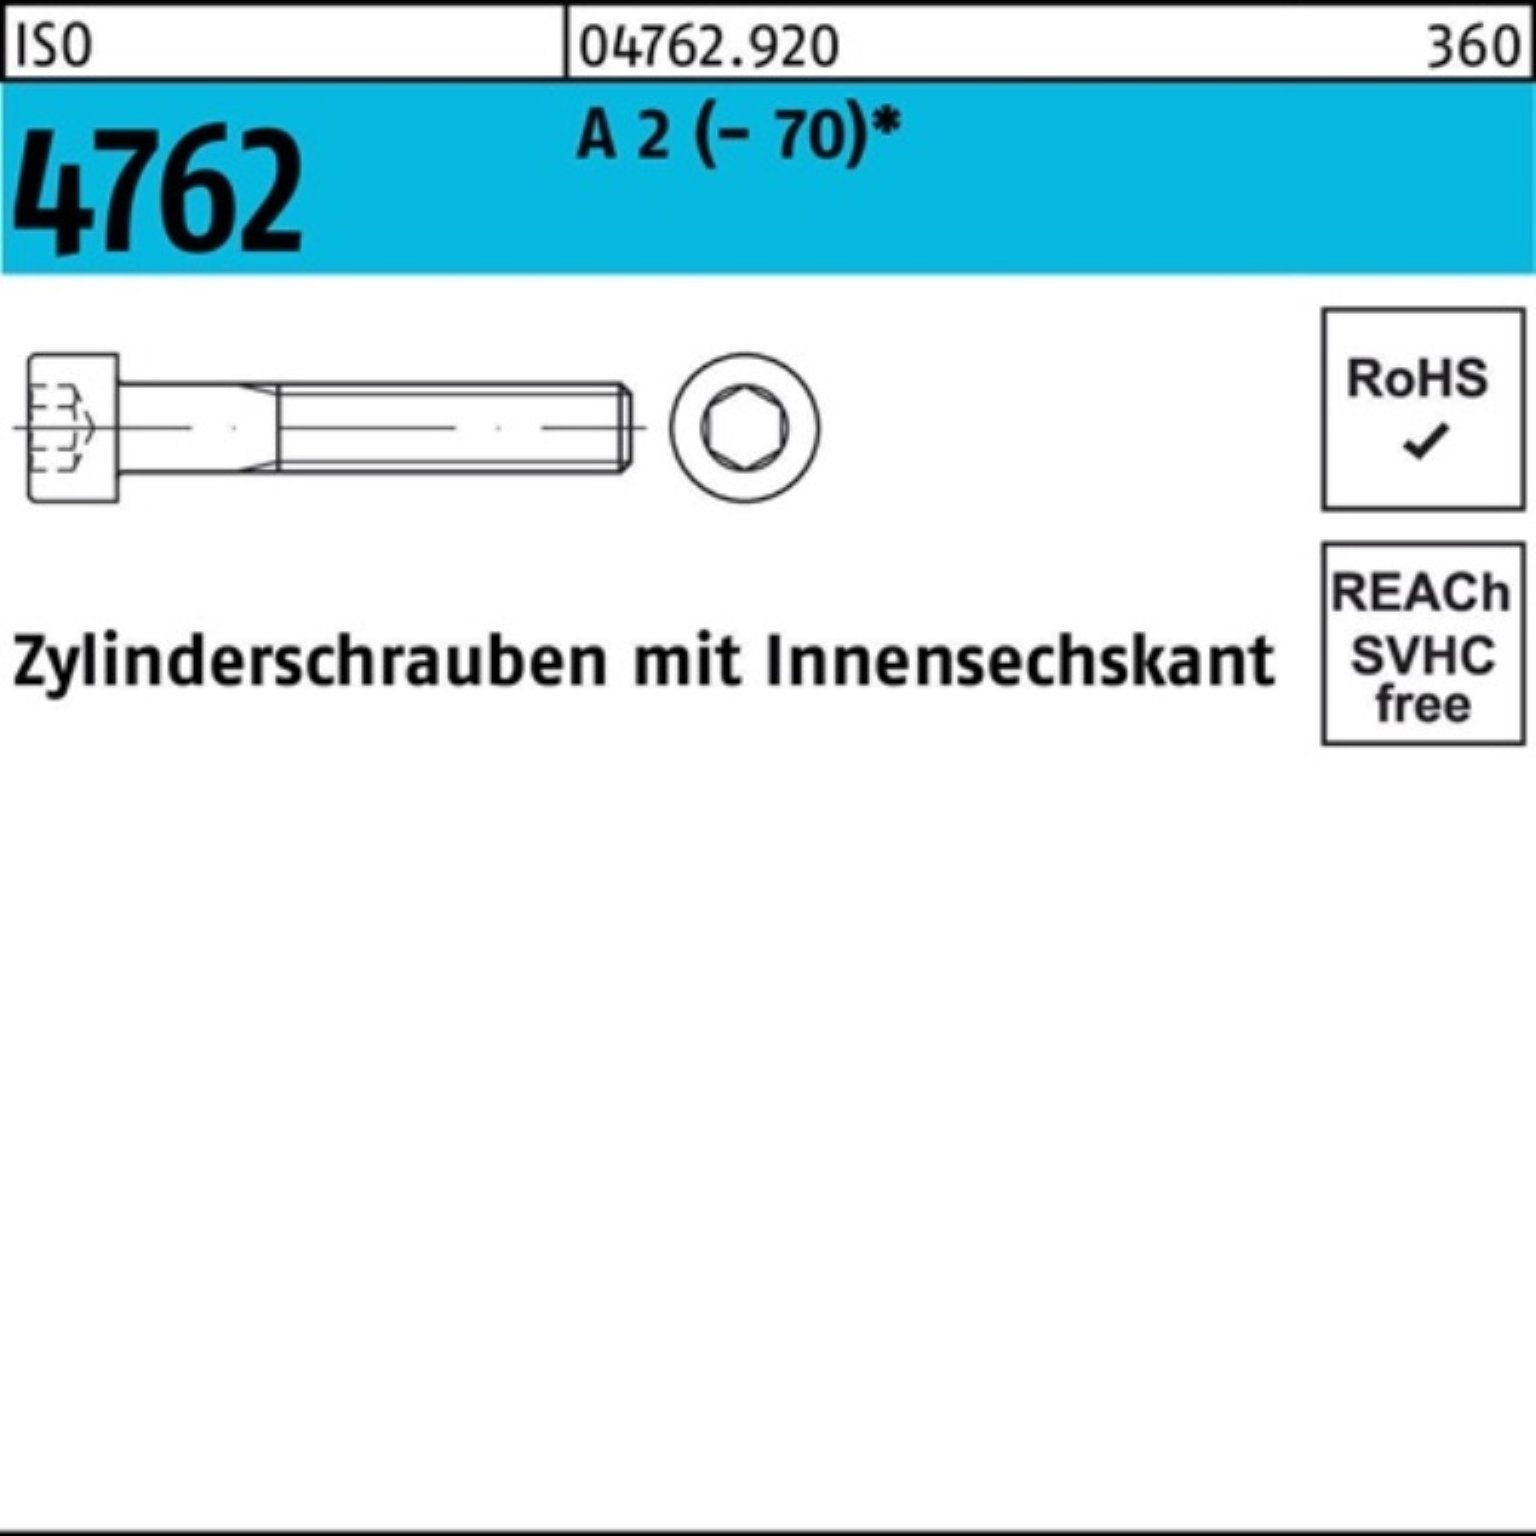 Zylinderschraube Reyher ISO 140 2 (70) Innen-6kt 4762 Pack M20x 1 S Zylinderschraube A 100er